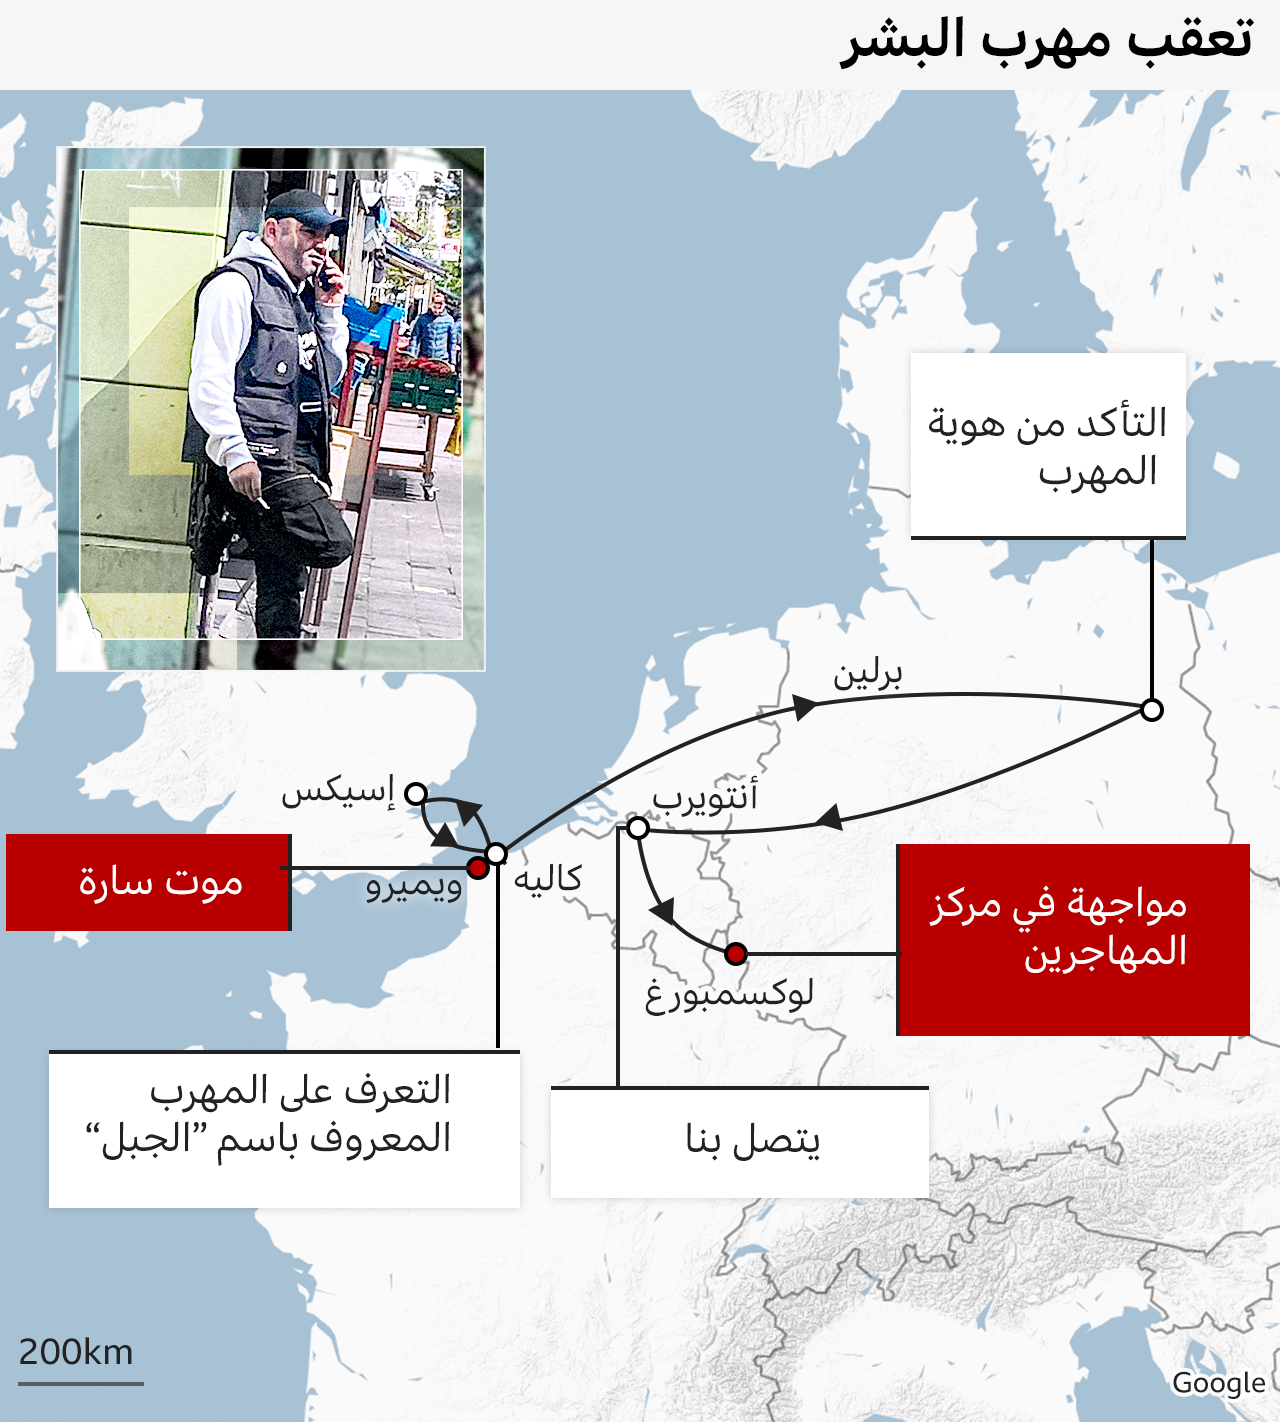 تعقب مهرب البشر - خريطة توضح رحلة بي بي سي من كاليه إلى لوكسمبورغ، عبر إسيكس وبرلين وأنتويرب